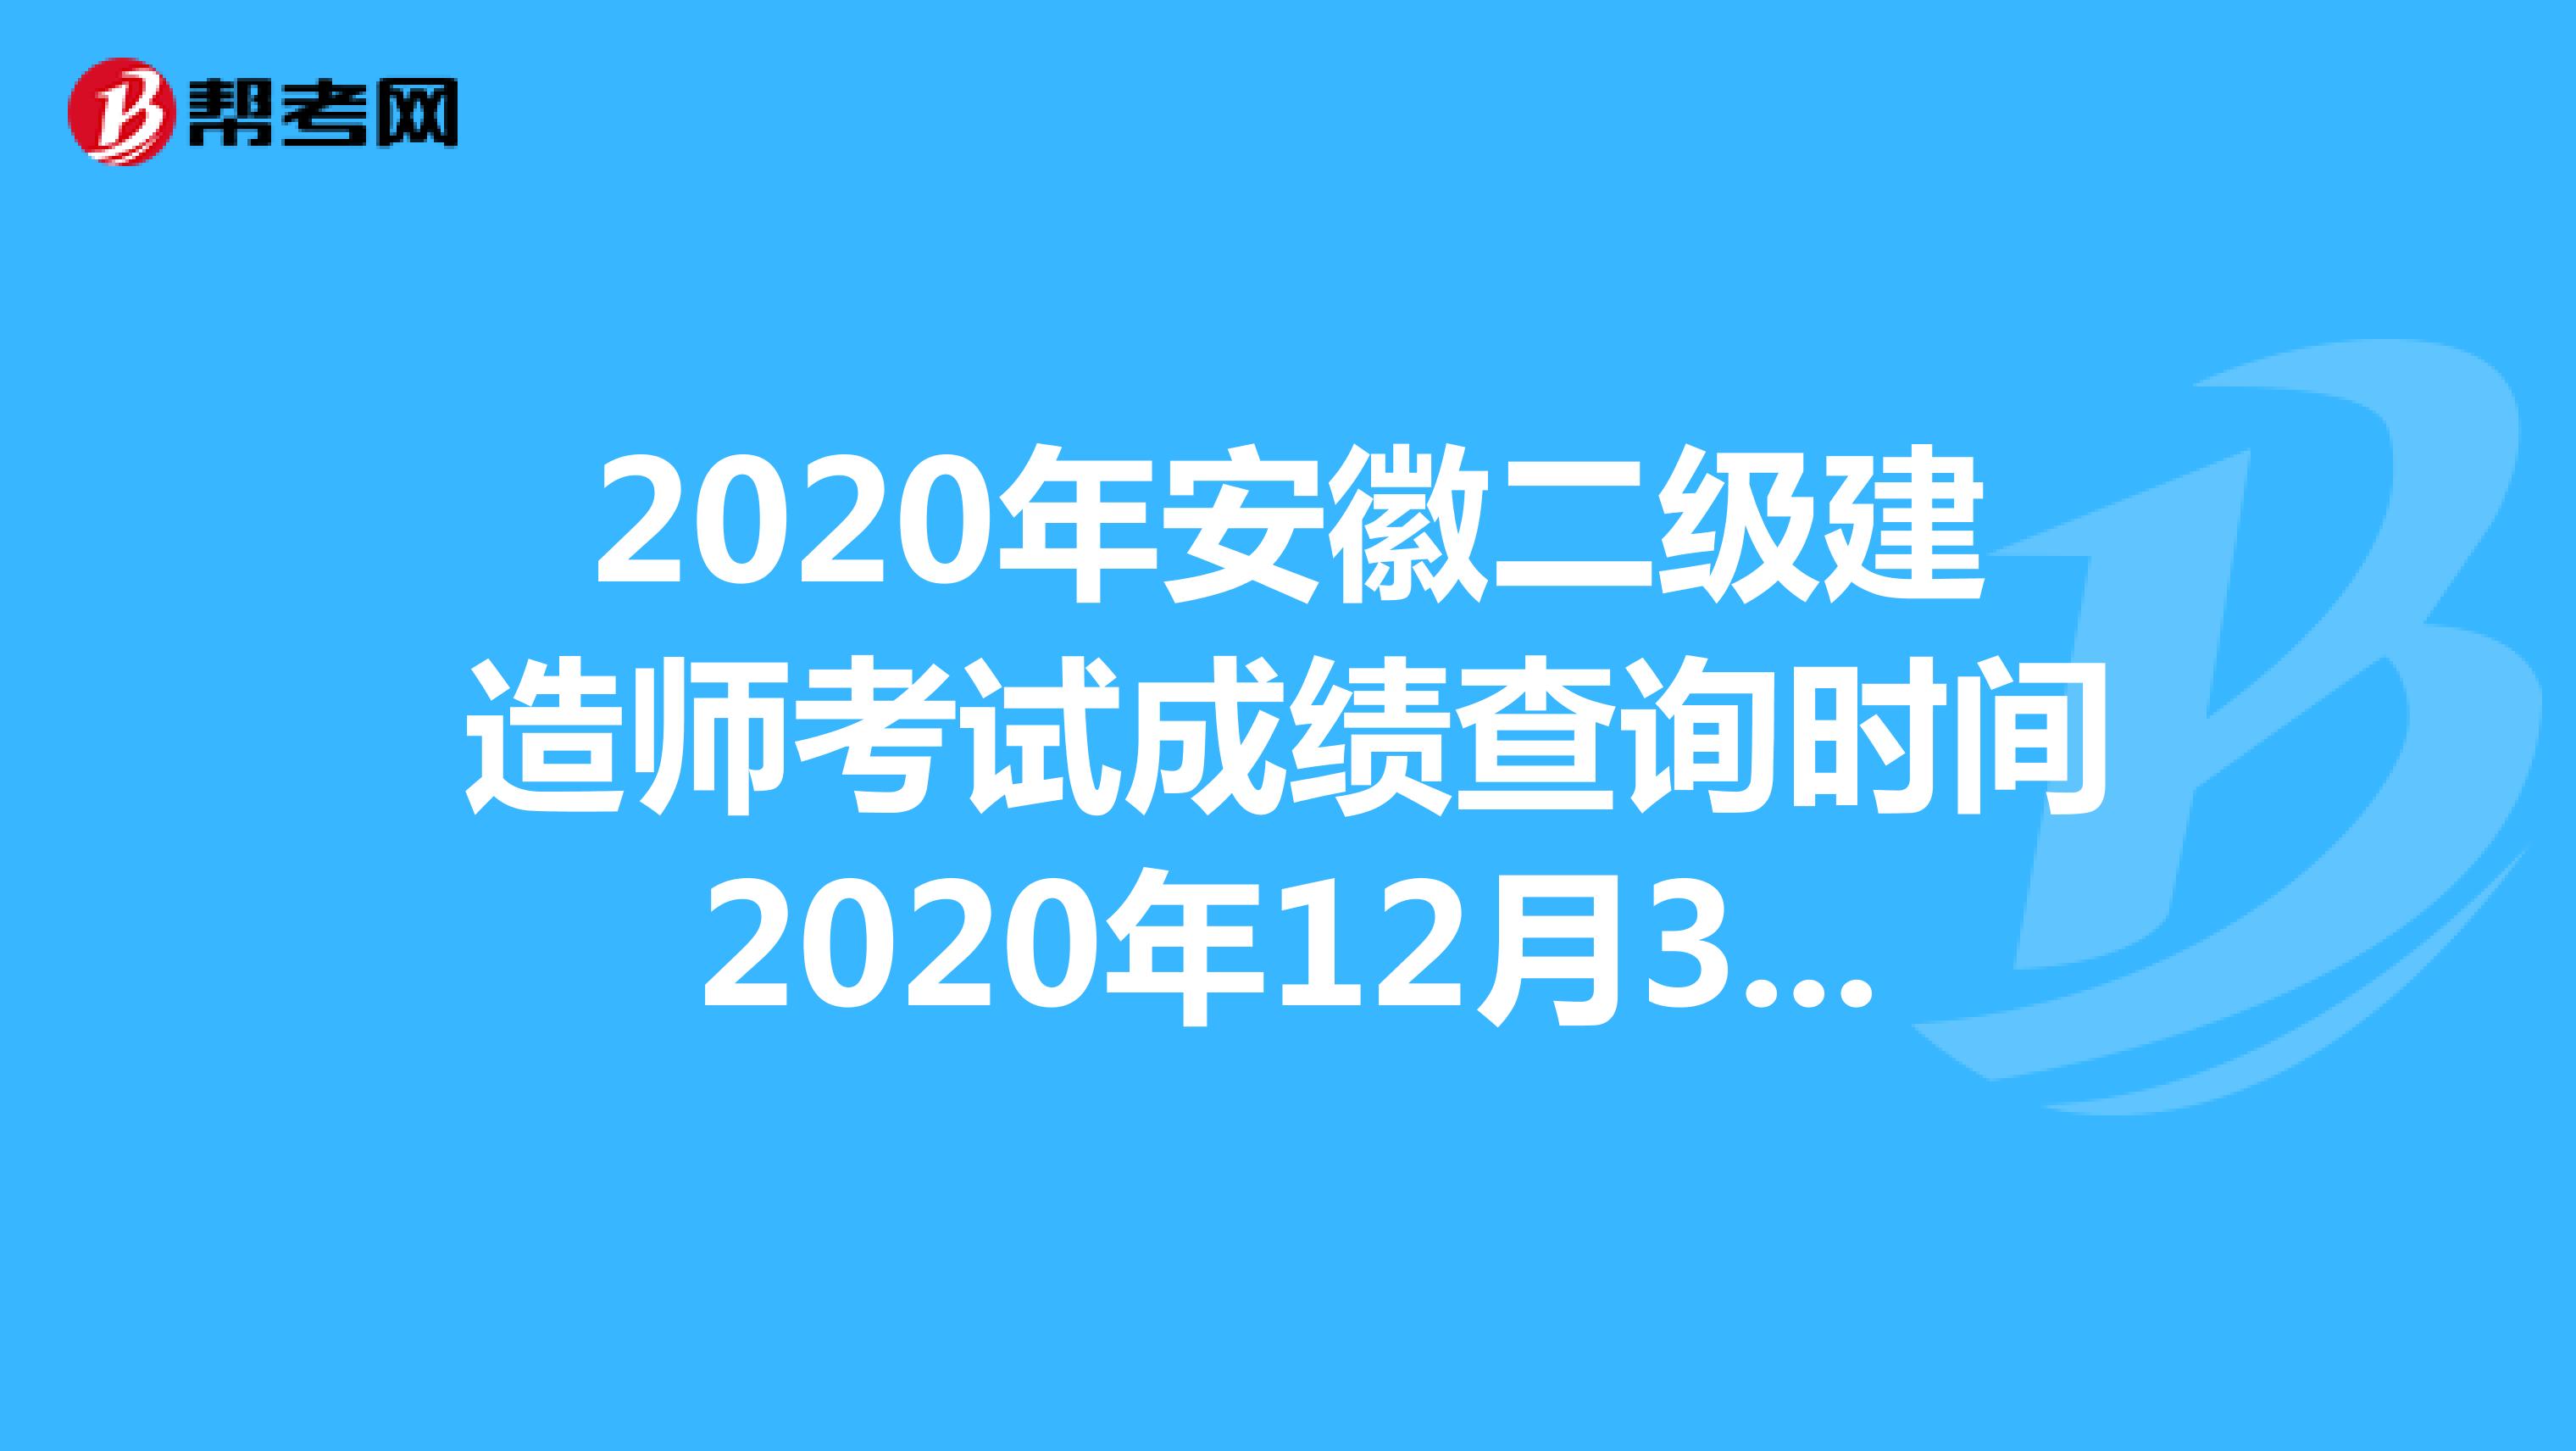 2020年安徽二级建造师考试成绩查询时间2020年12月31日前